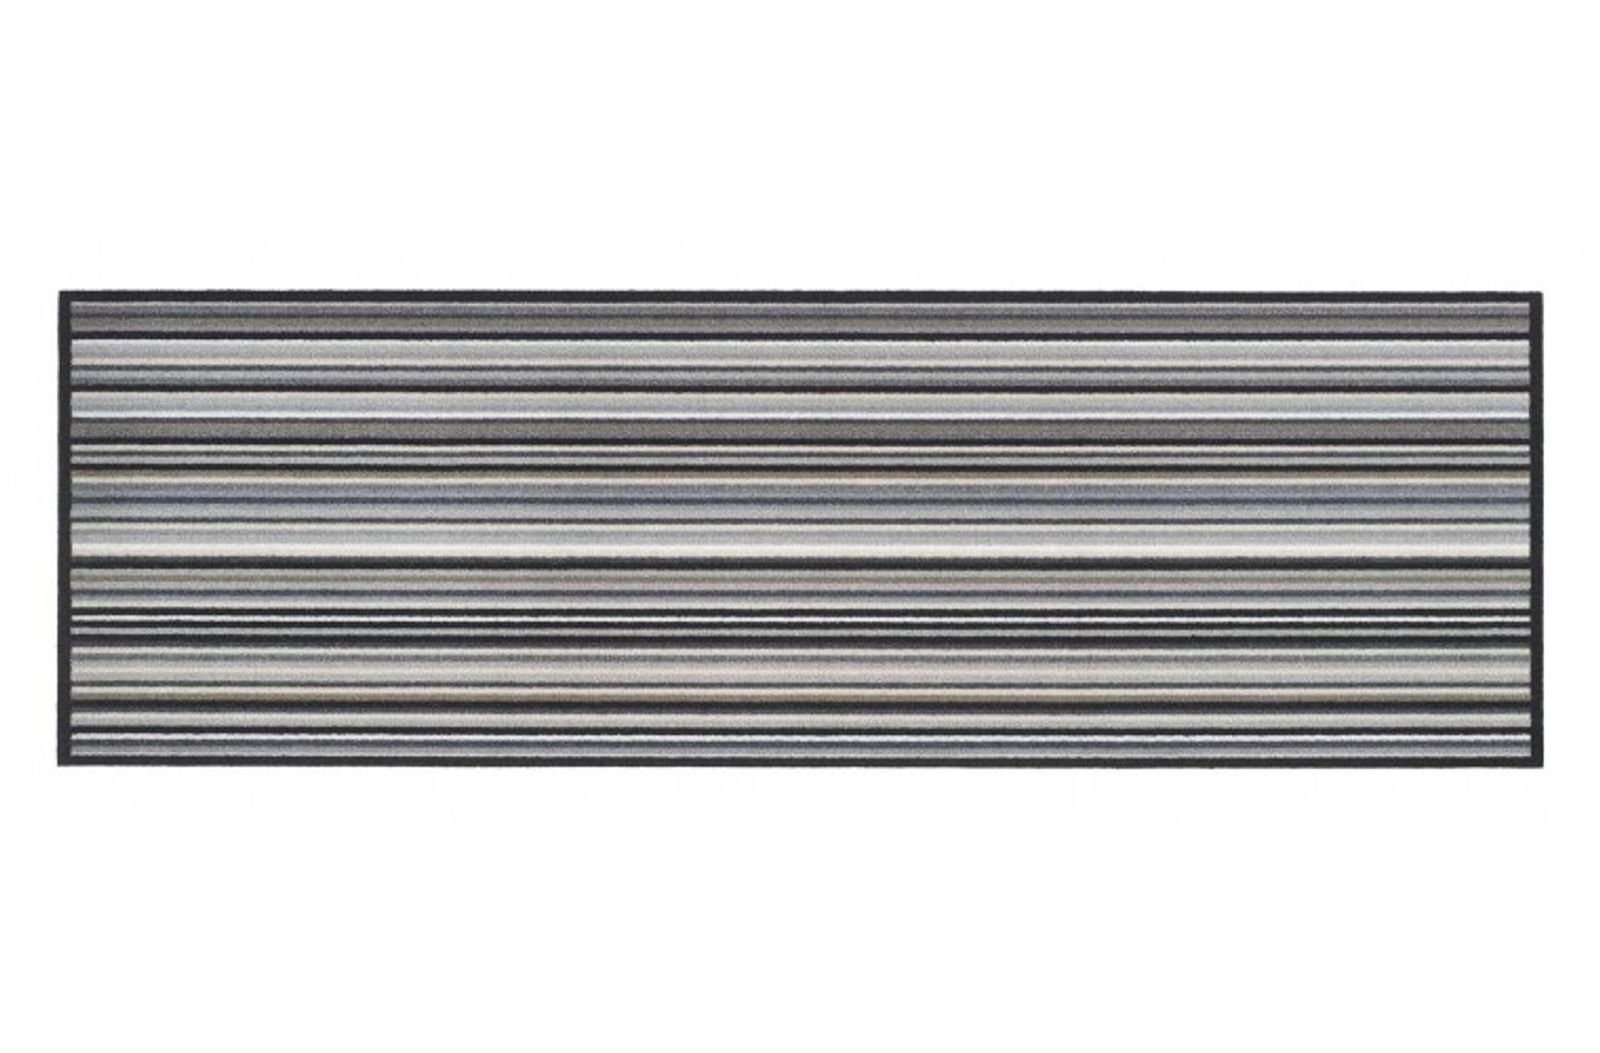 Läufer MD Entree Cook&Wash Eingangsmatte - Teppichmatte - Küchenteppich, MD Entree, rechteckig, Höhe: 5 mm, bei 30° waschbar, anti-rutsch, 50 x 150 cm, Pretty Lines, bunt